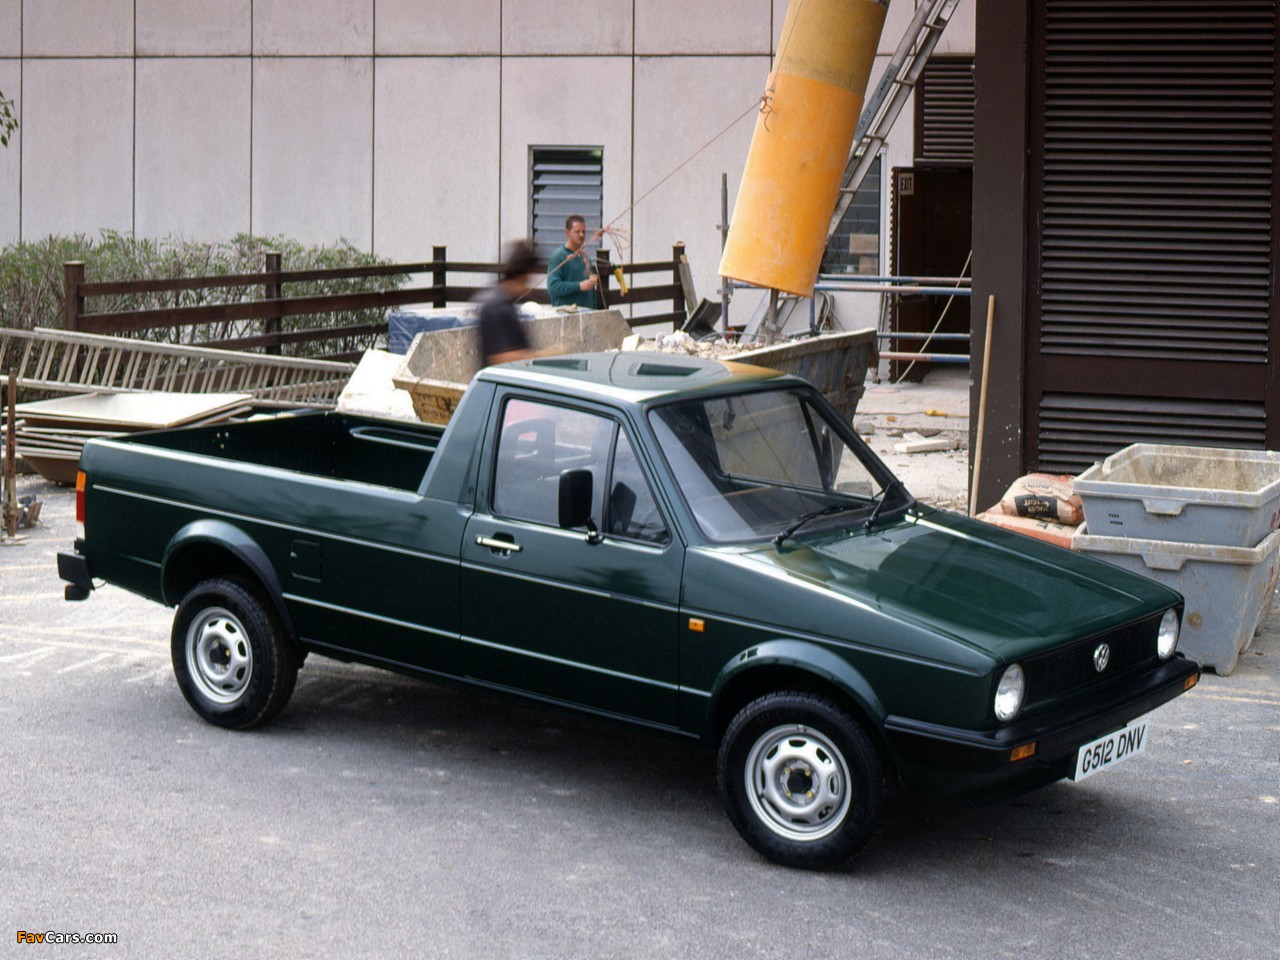 Vw caddy 1980